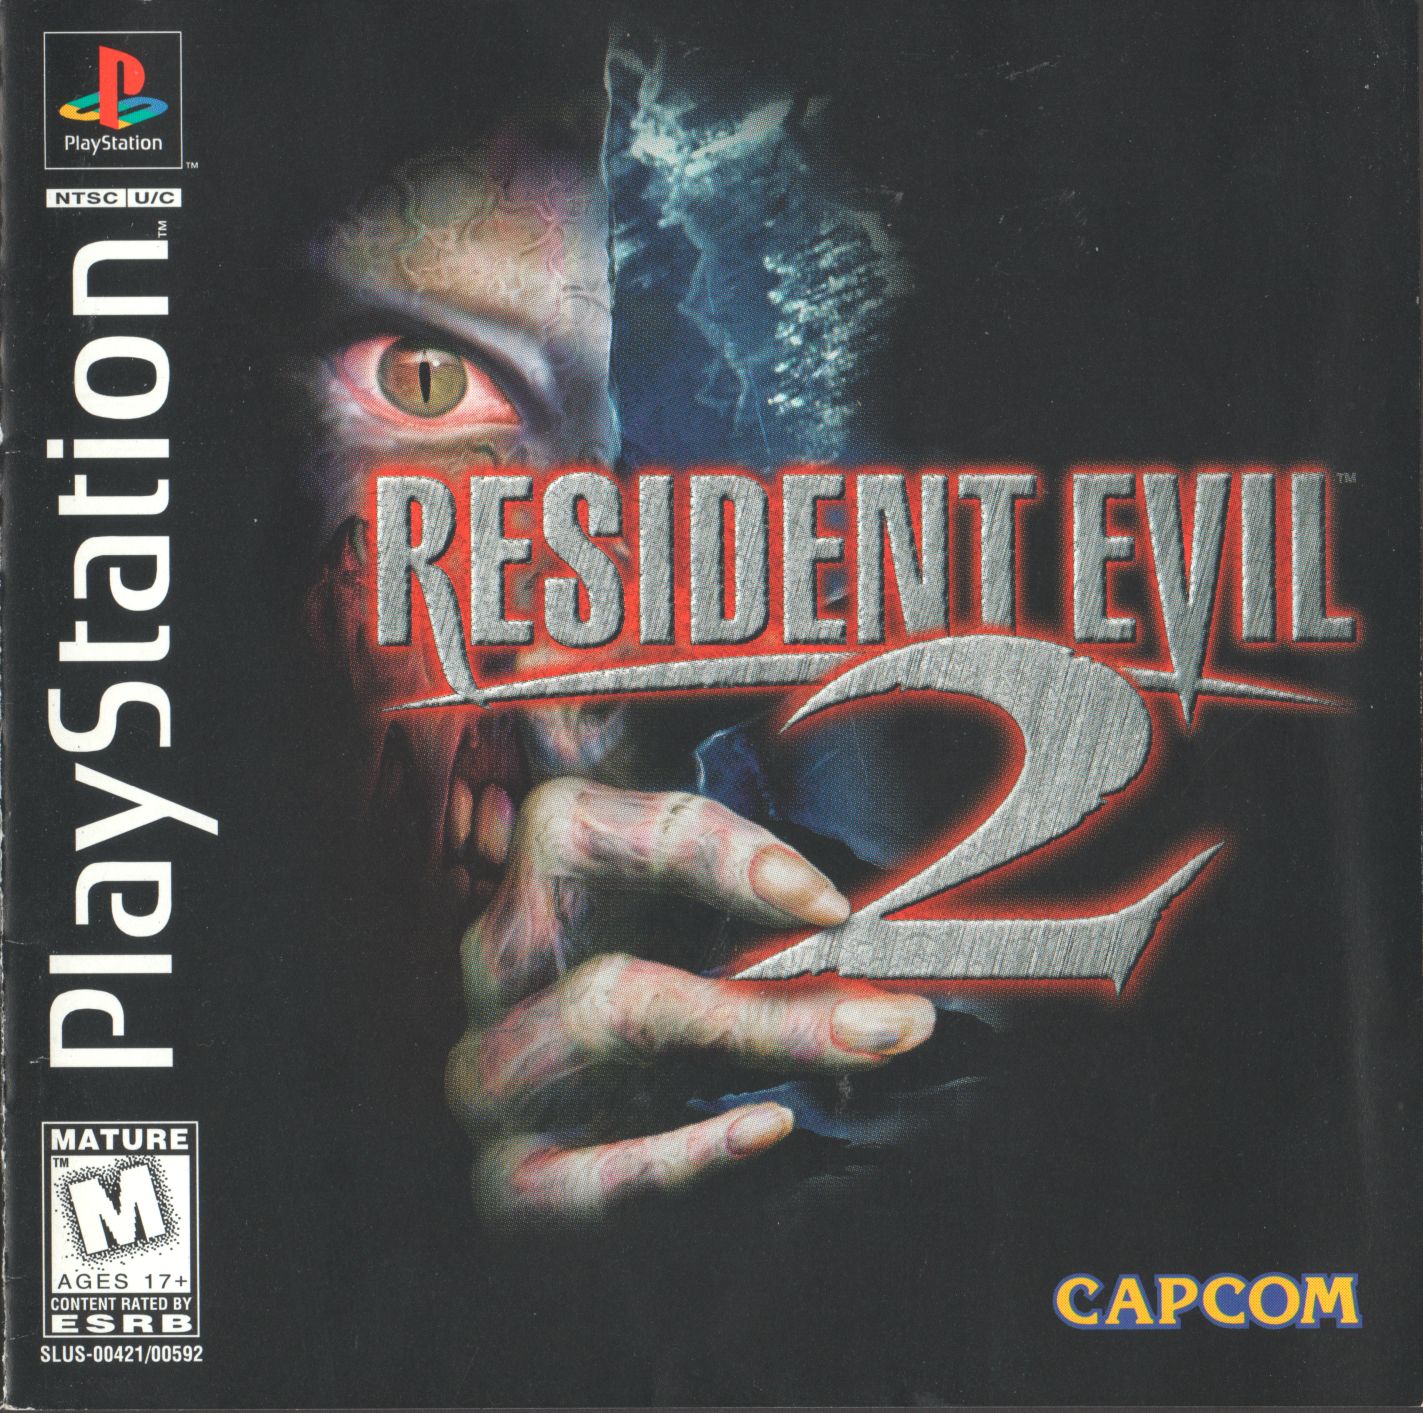 Resident Evil 2 PSX cover